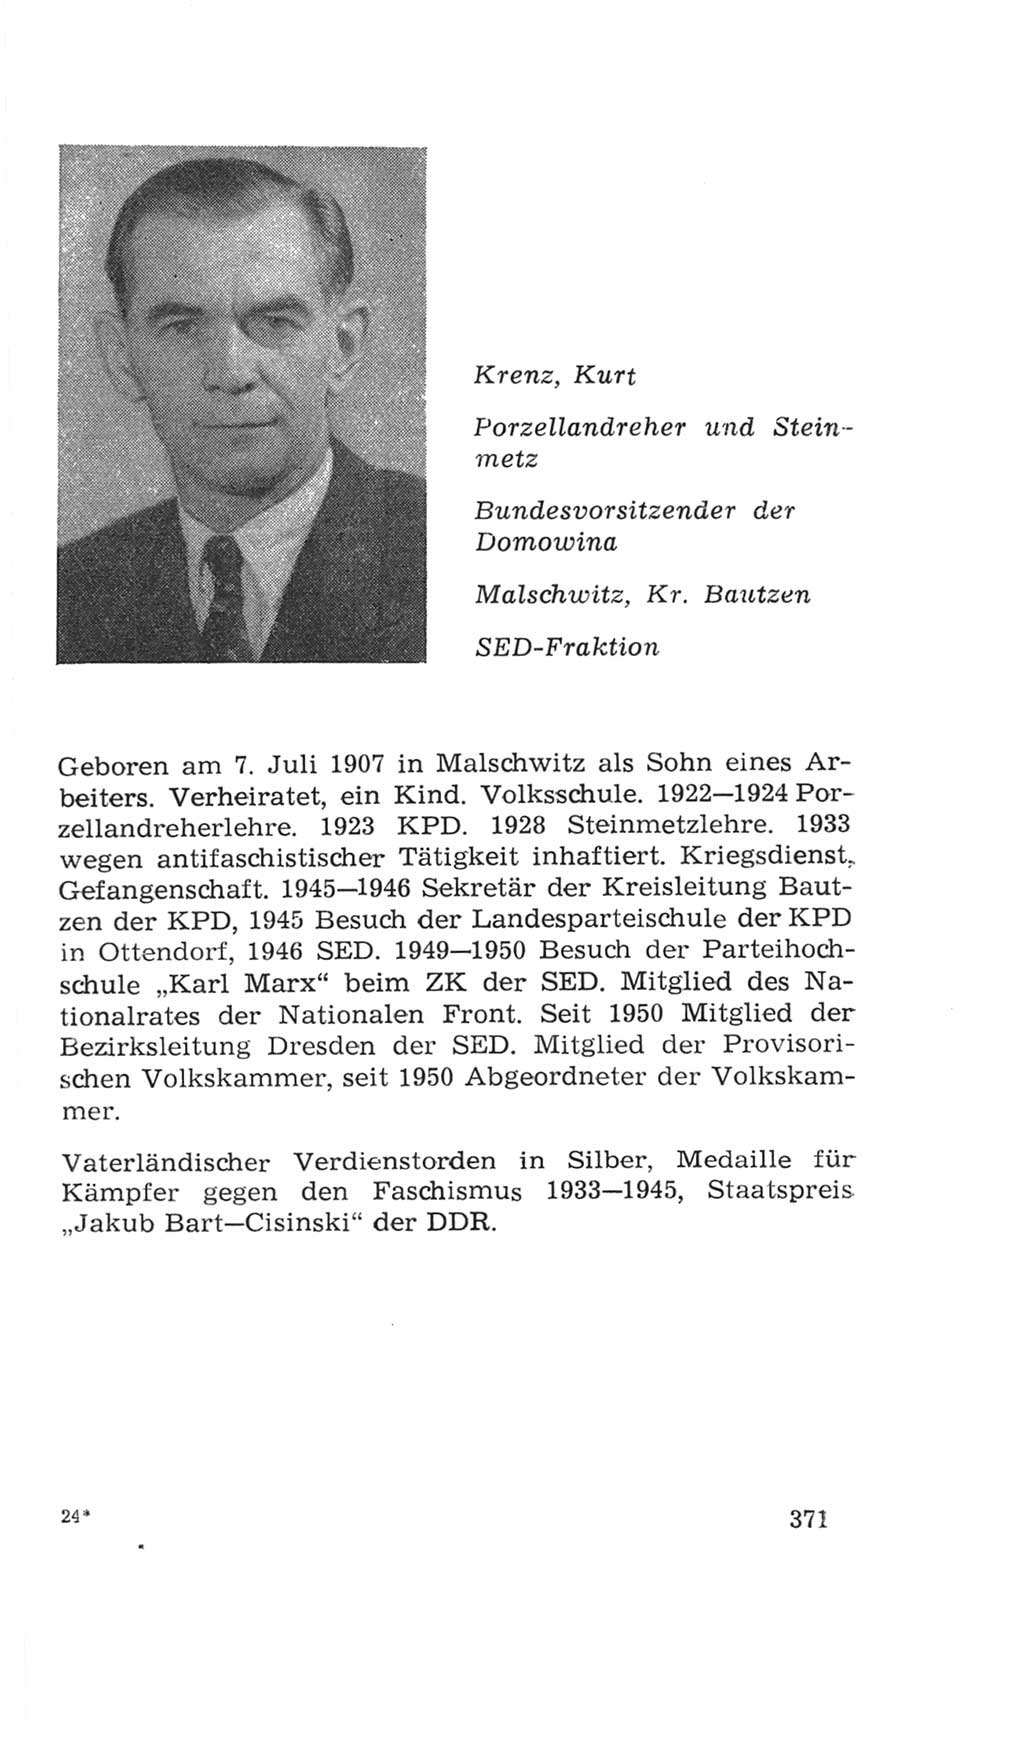 Volkskammer (VK) der Deutschen Demokratischen Republik (DDR), 4. Wahlperiode 1963-1967, Seite 371 (VK. DDR 4. WP. 1963-1967, S. 371)